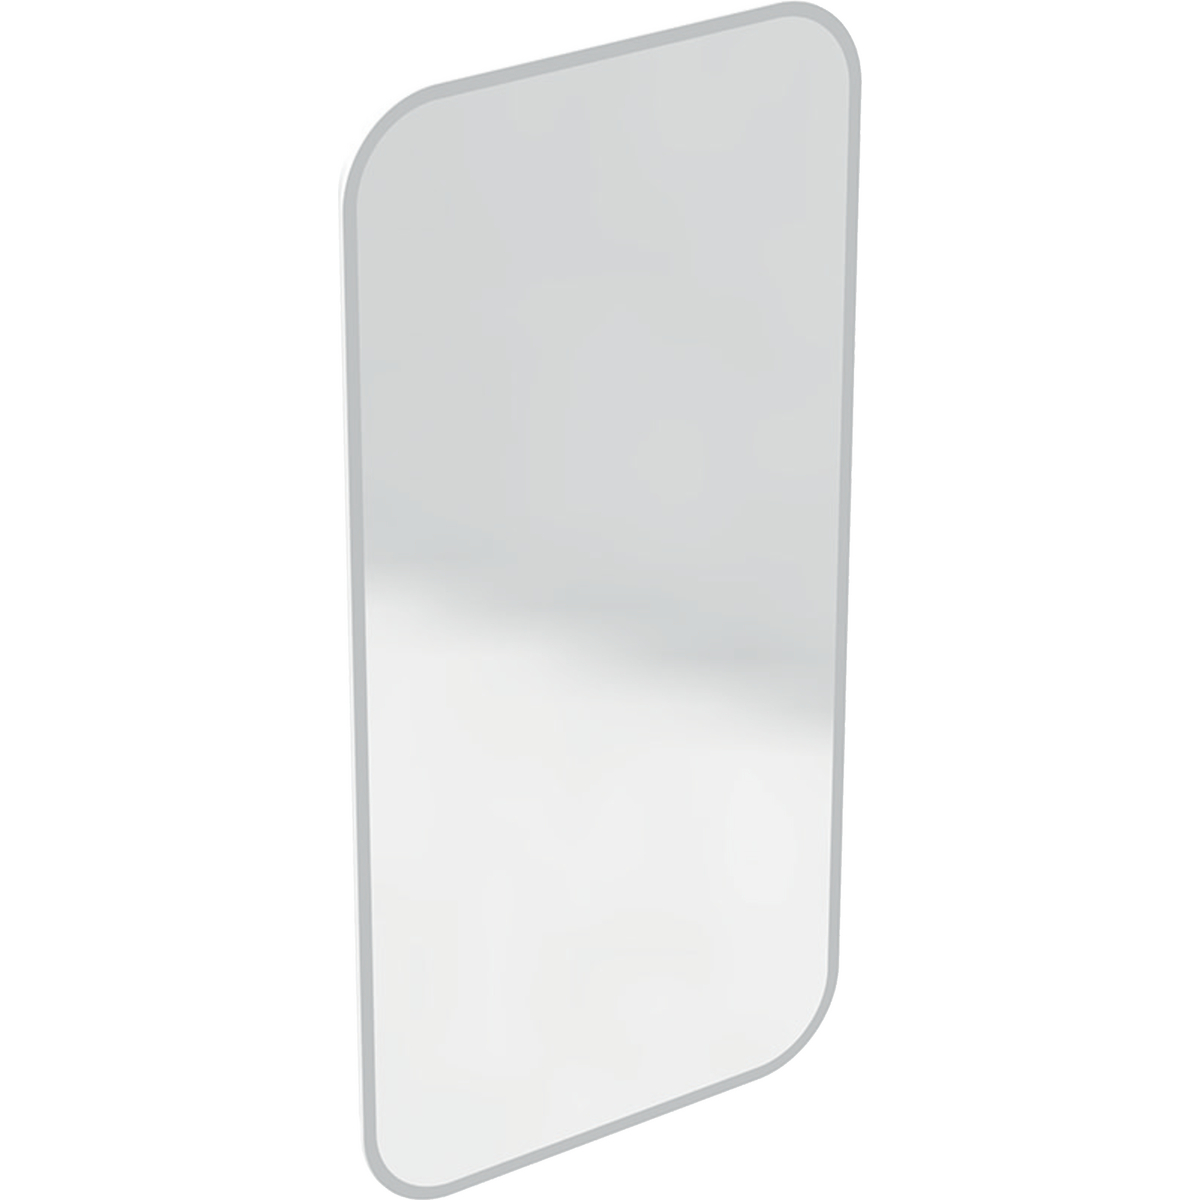 Geberit myDay - Zrcadlo s LED osvětlením a vyhříváním, 400x800 mm 824340000